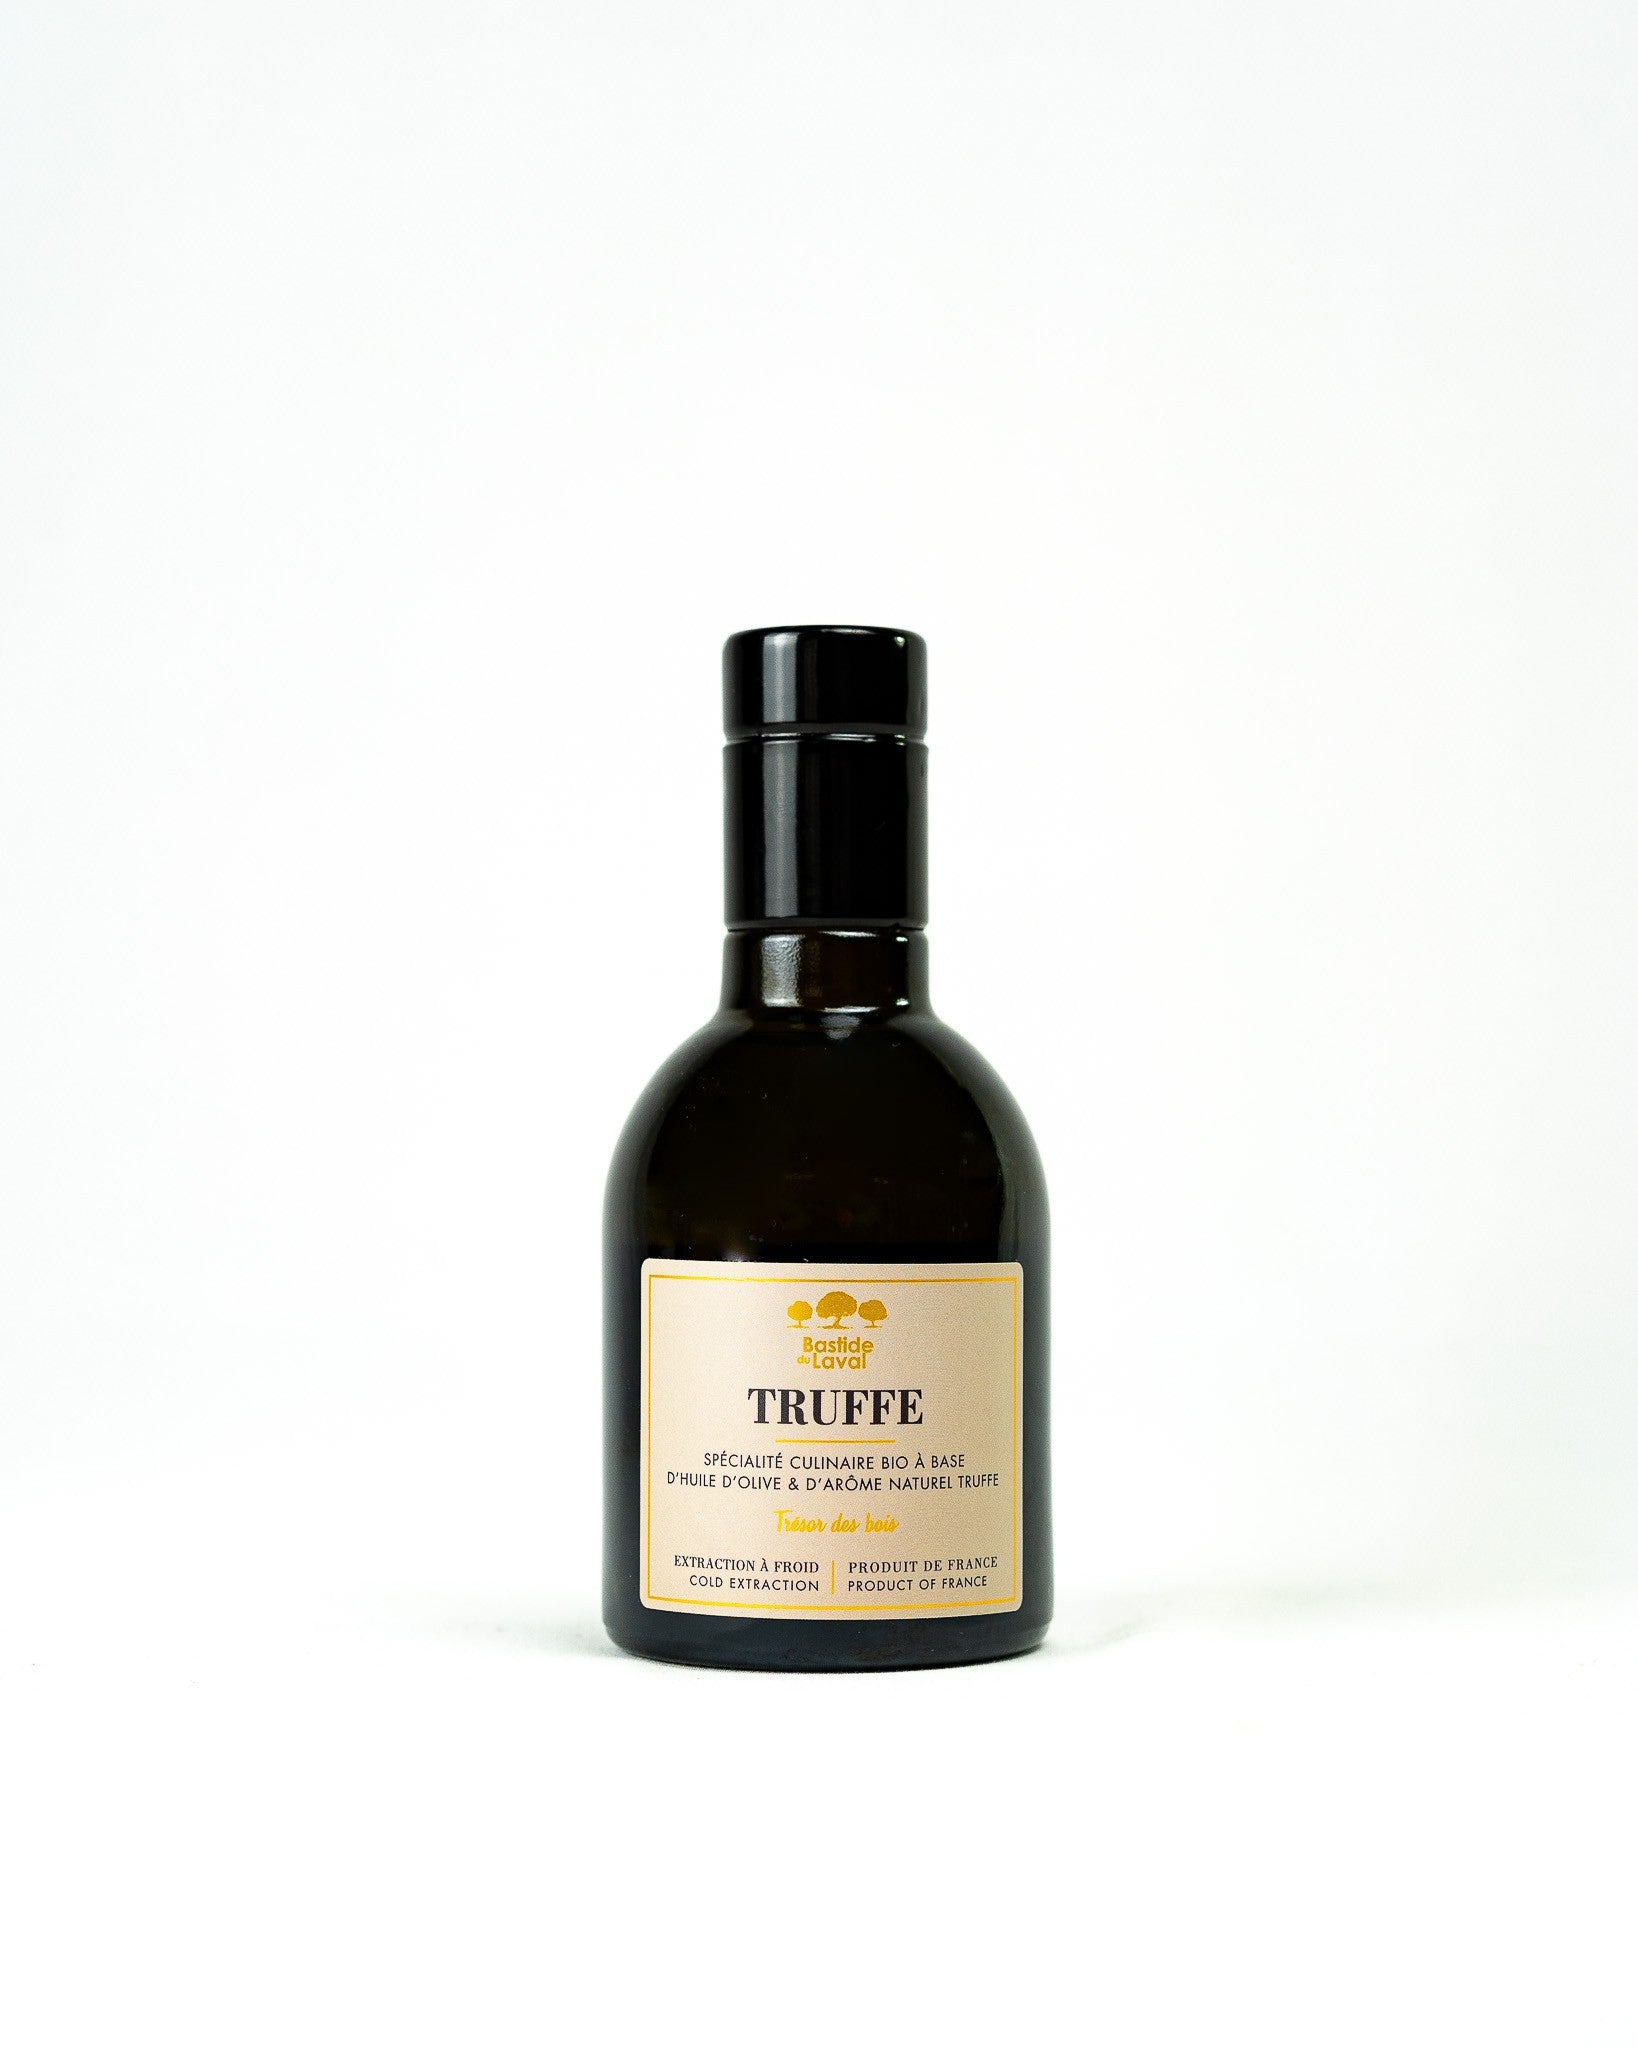 Trüffel-Olivenöl 25cl